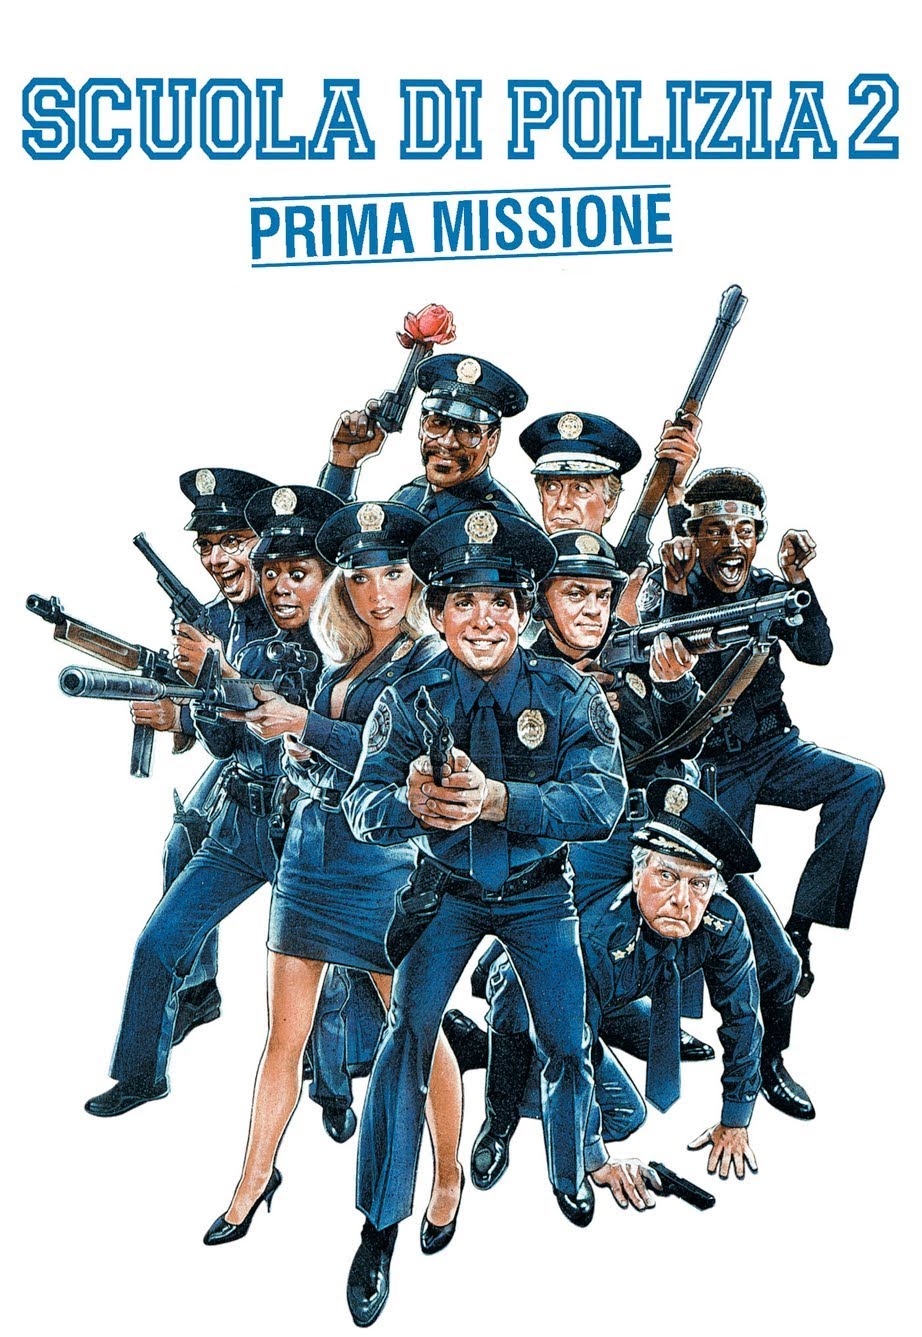 Scuola di polizia 2 – Prima missione [HD] (1985)